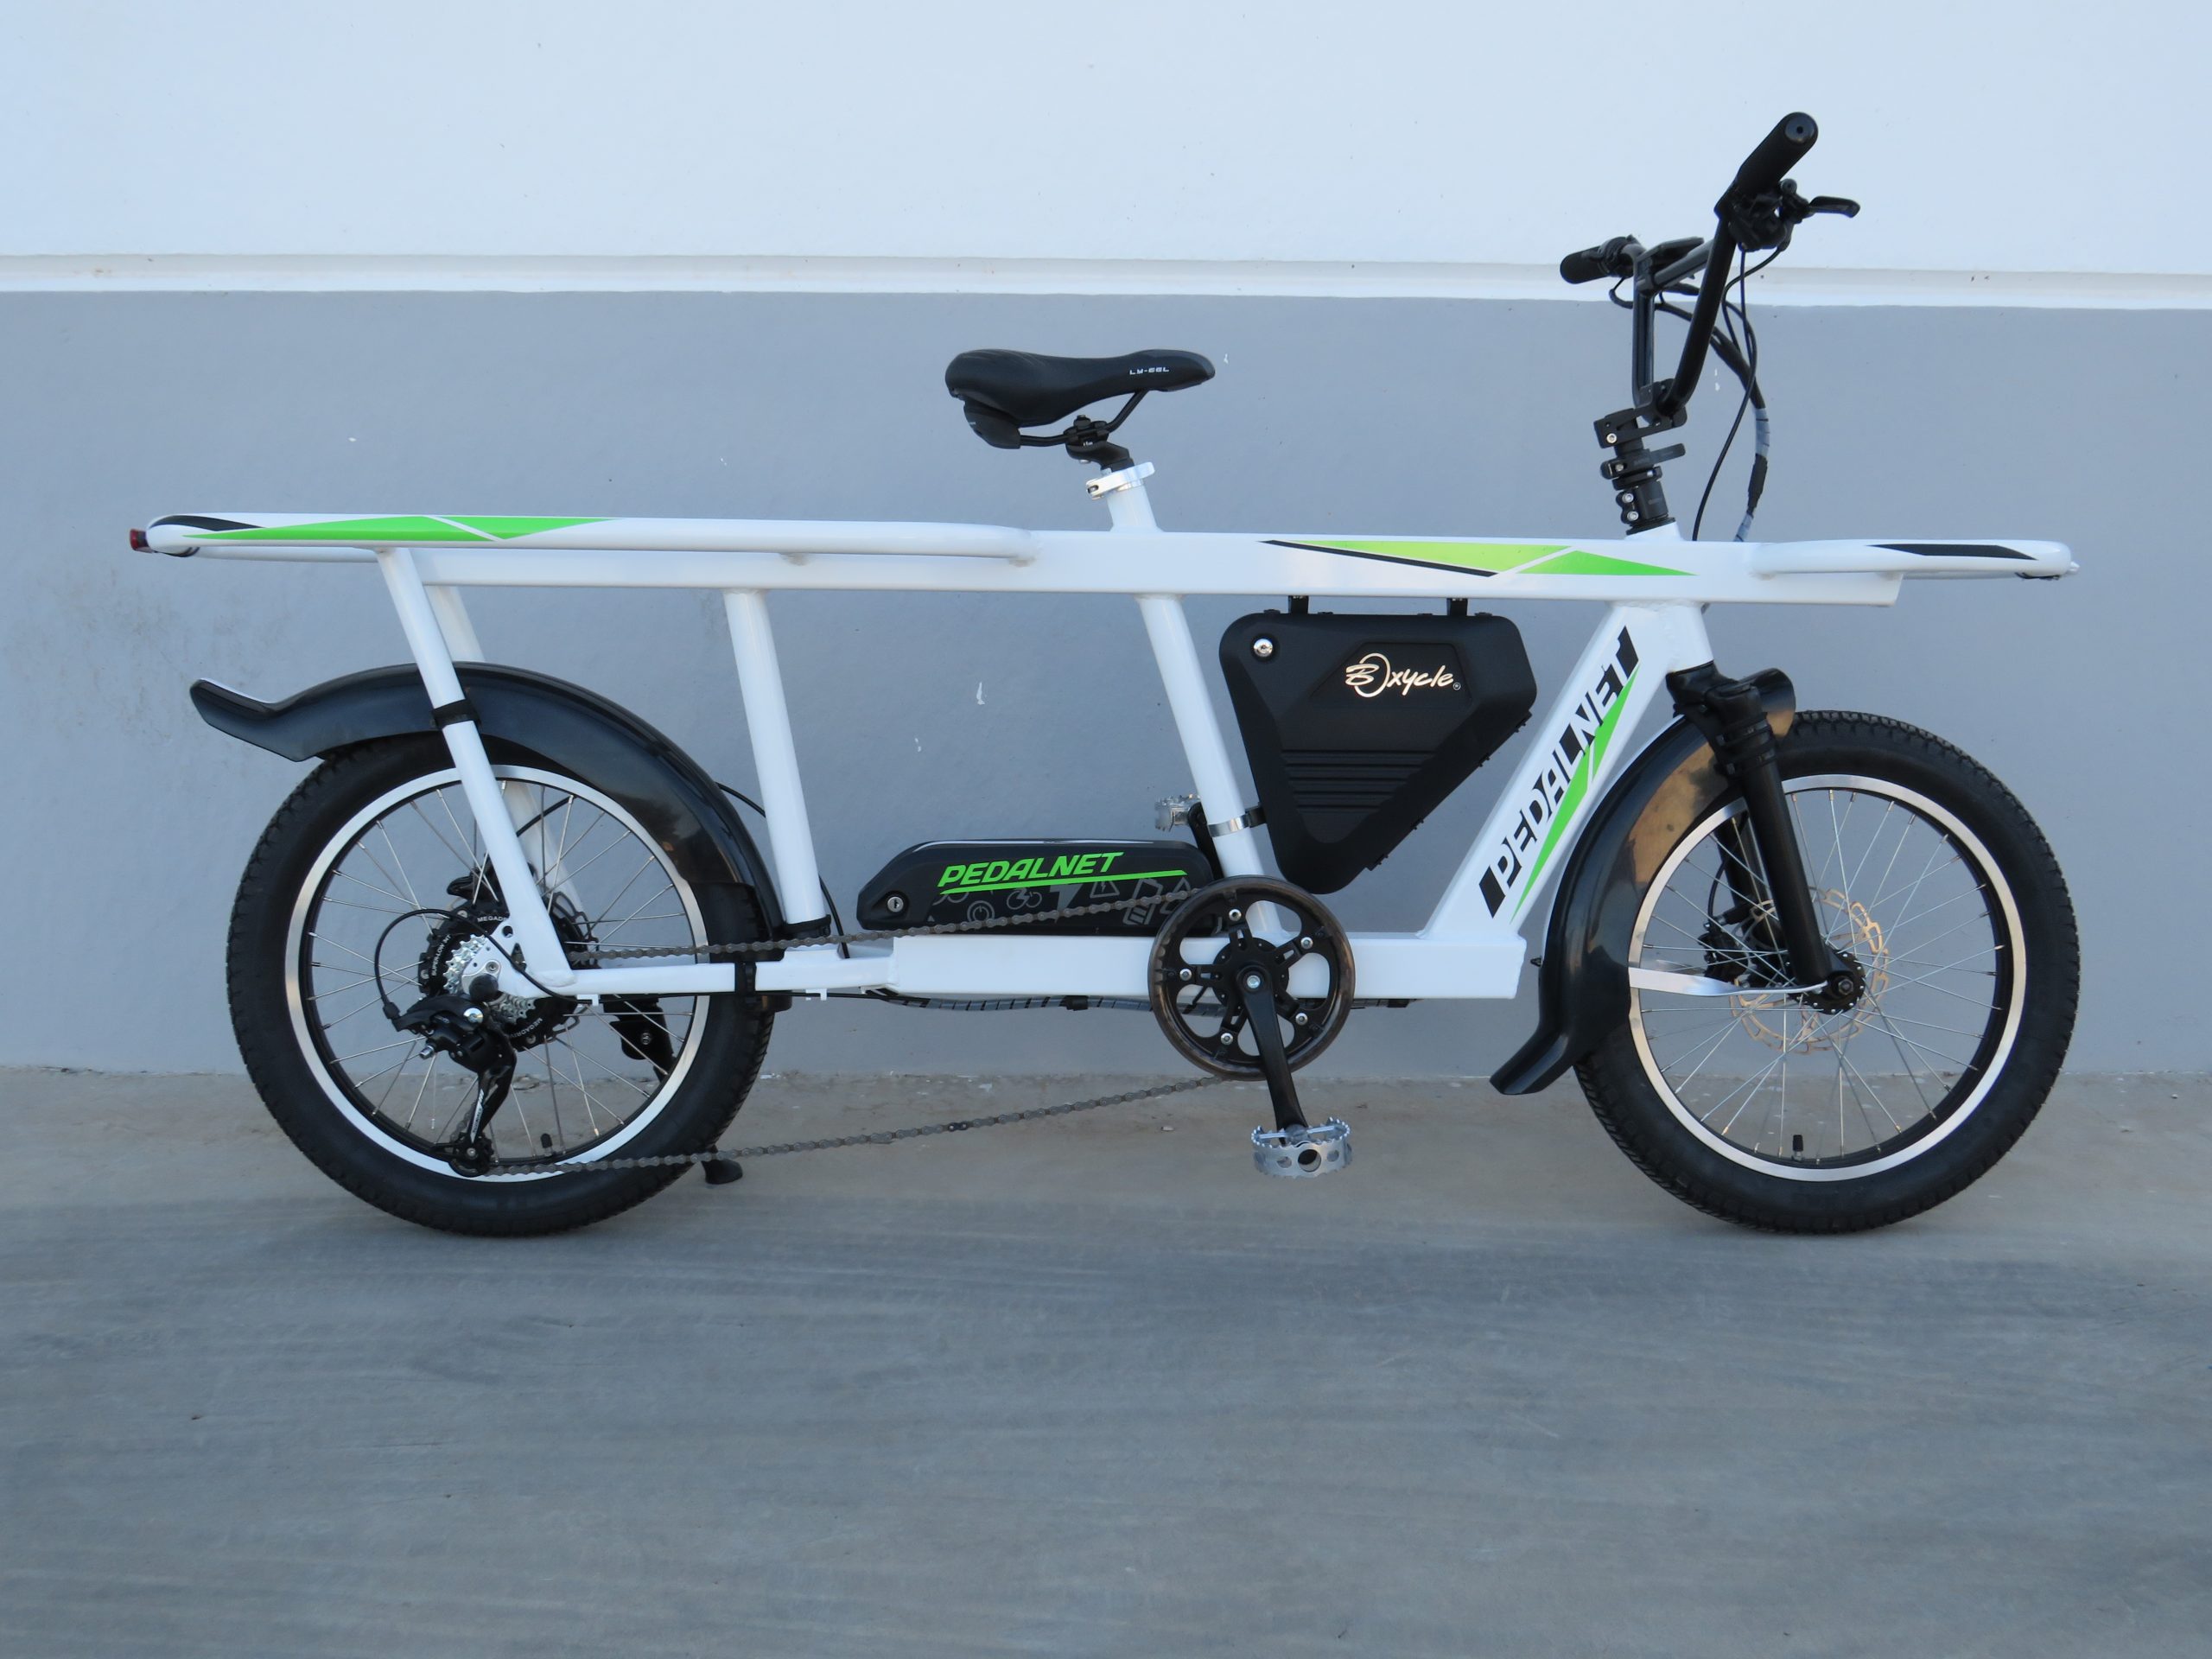 Bicicleta eléctrica de carga, cargo bike electrica, bicicleta de cargas pesadas, bicicleta eléctrica, bicicleta para cargas pesadas